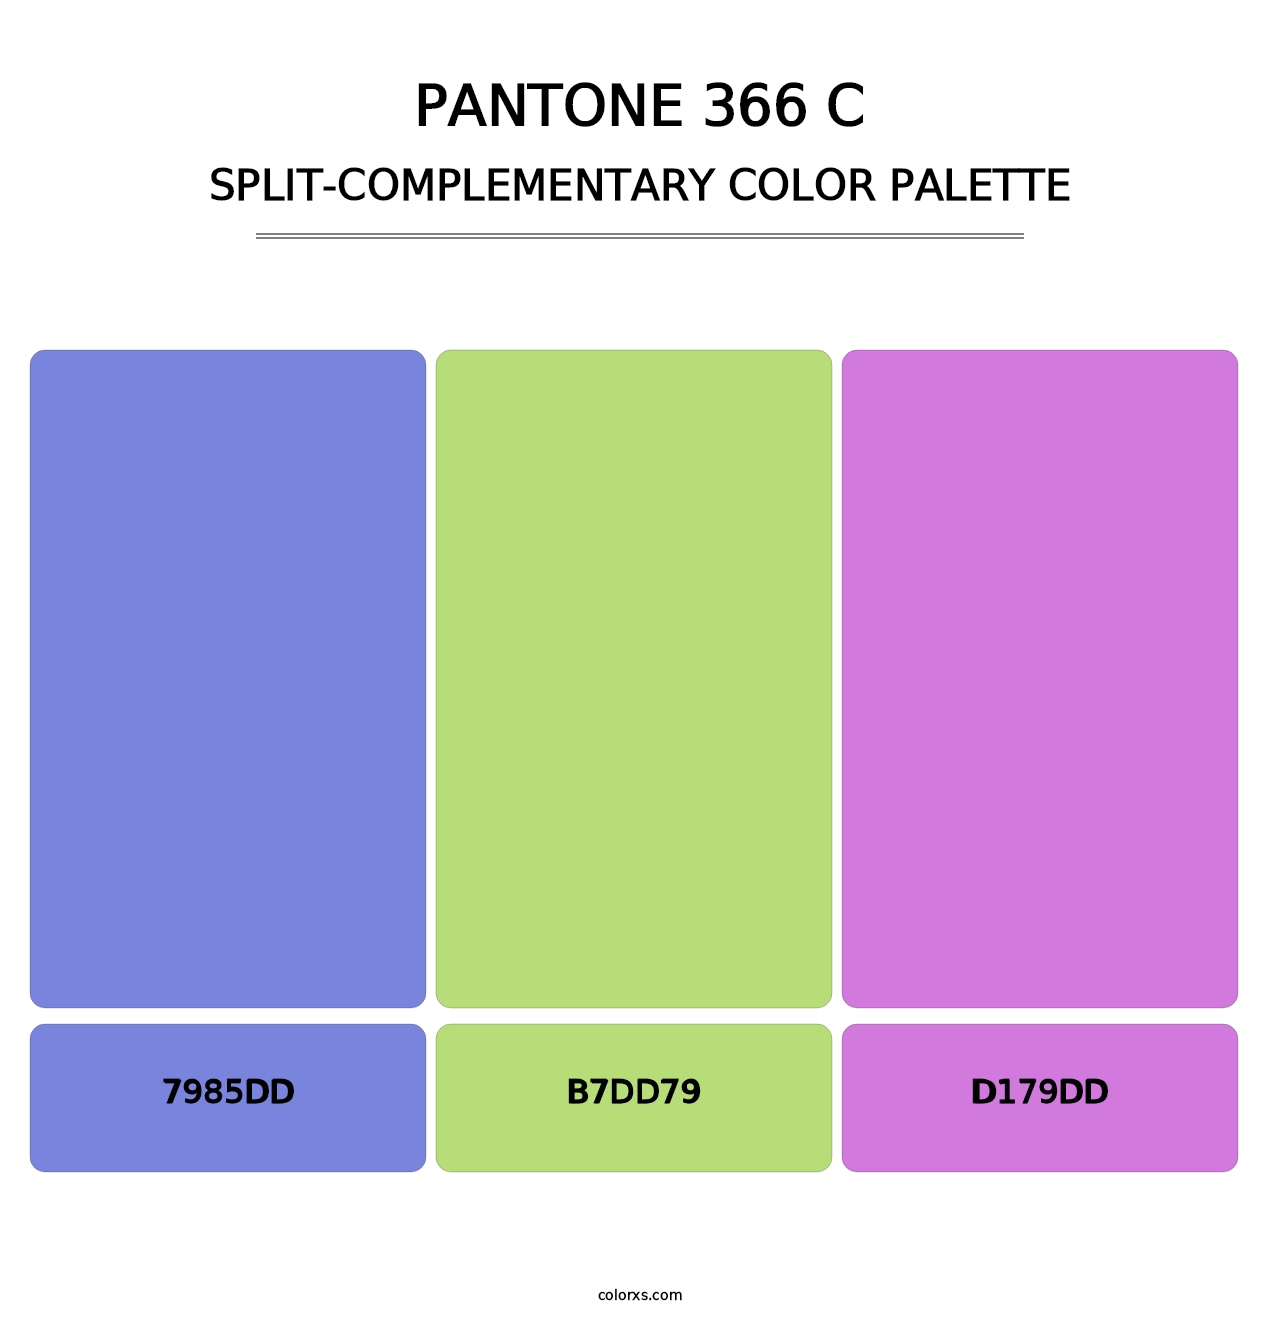 PANTONE 366 C - Split-Complementary Color Palette